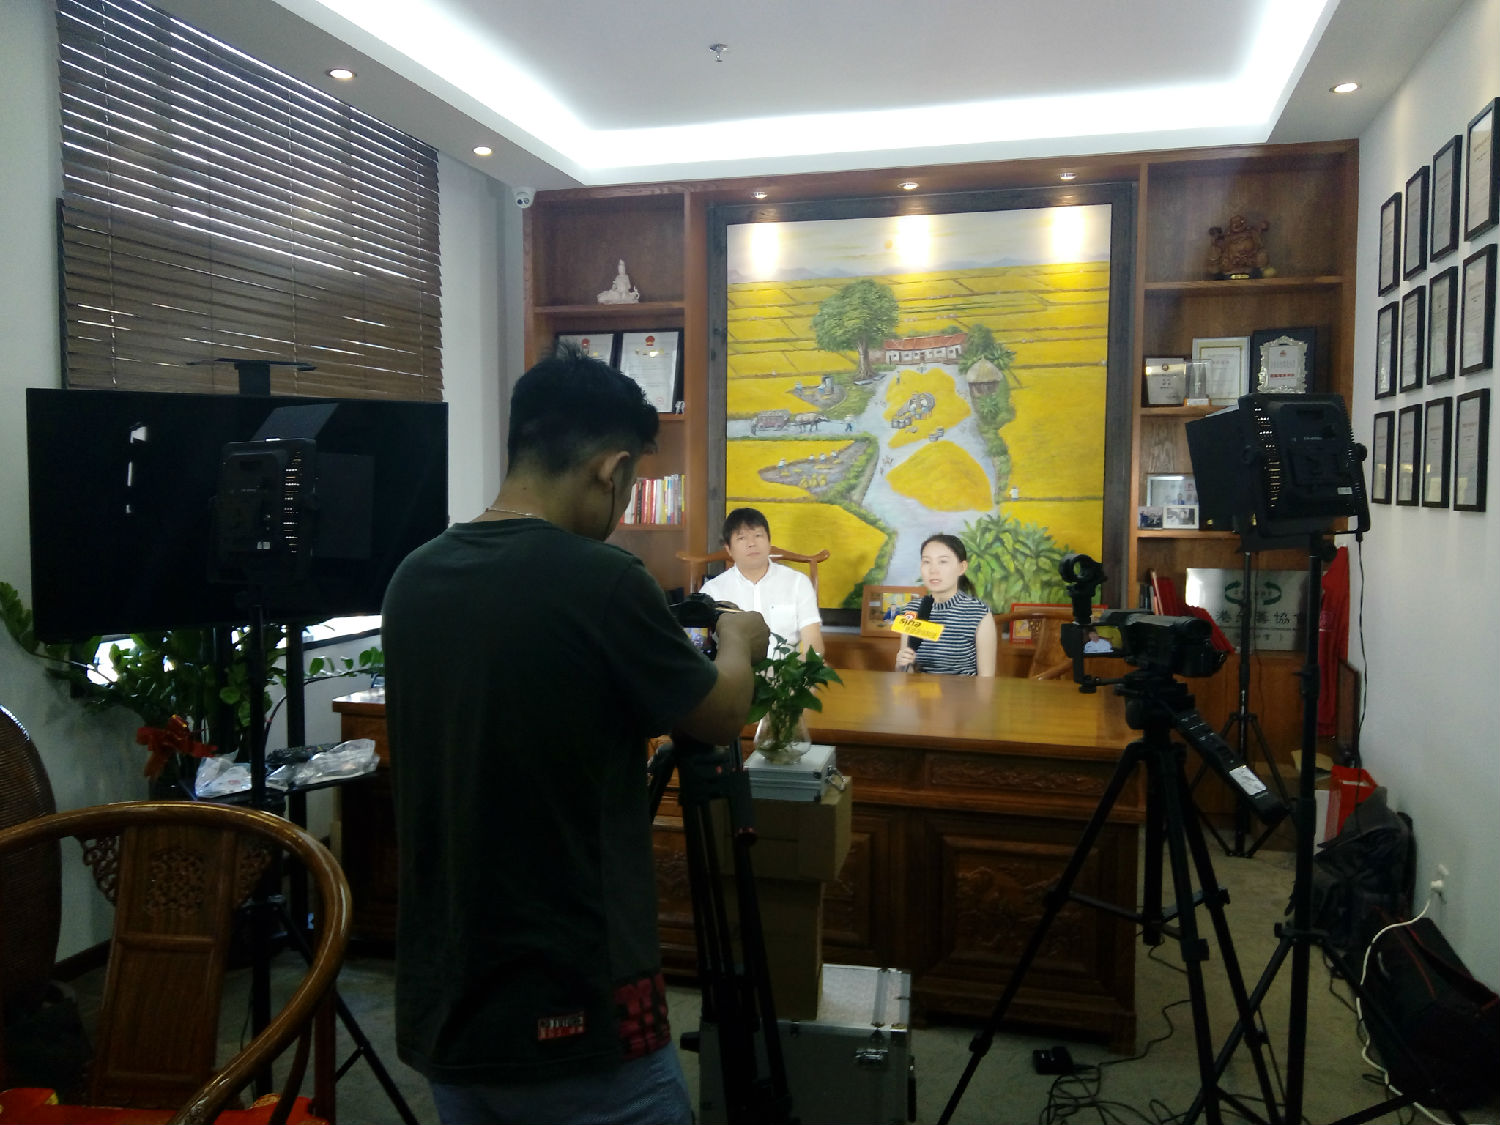 云南汉康生物科技有限公司董事长 CBD提取第一人 潘宗兵采访拍摄中